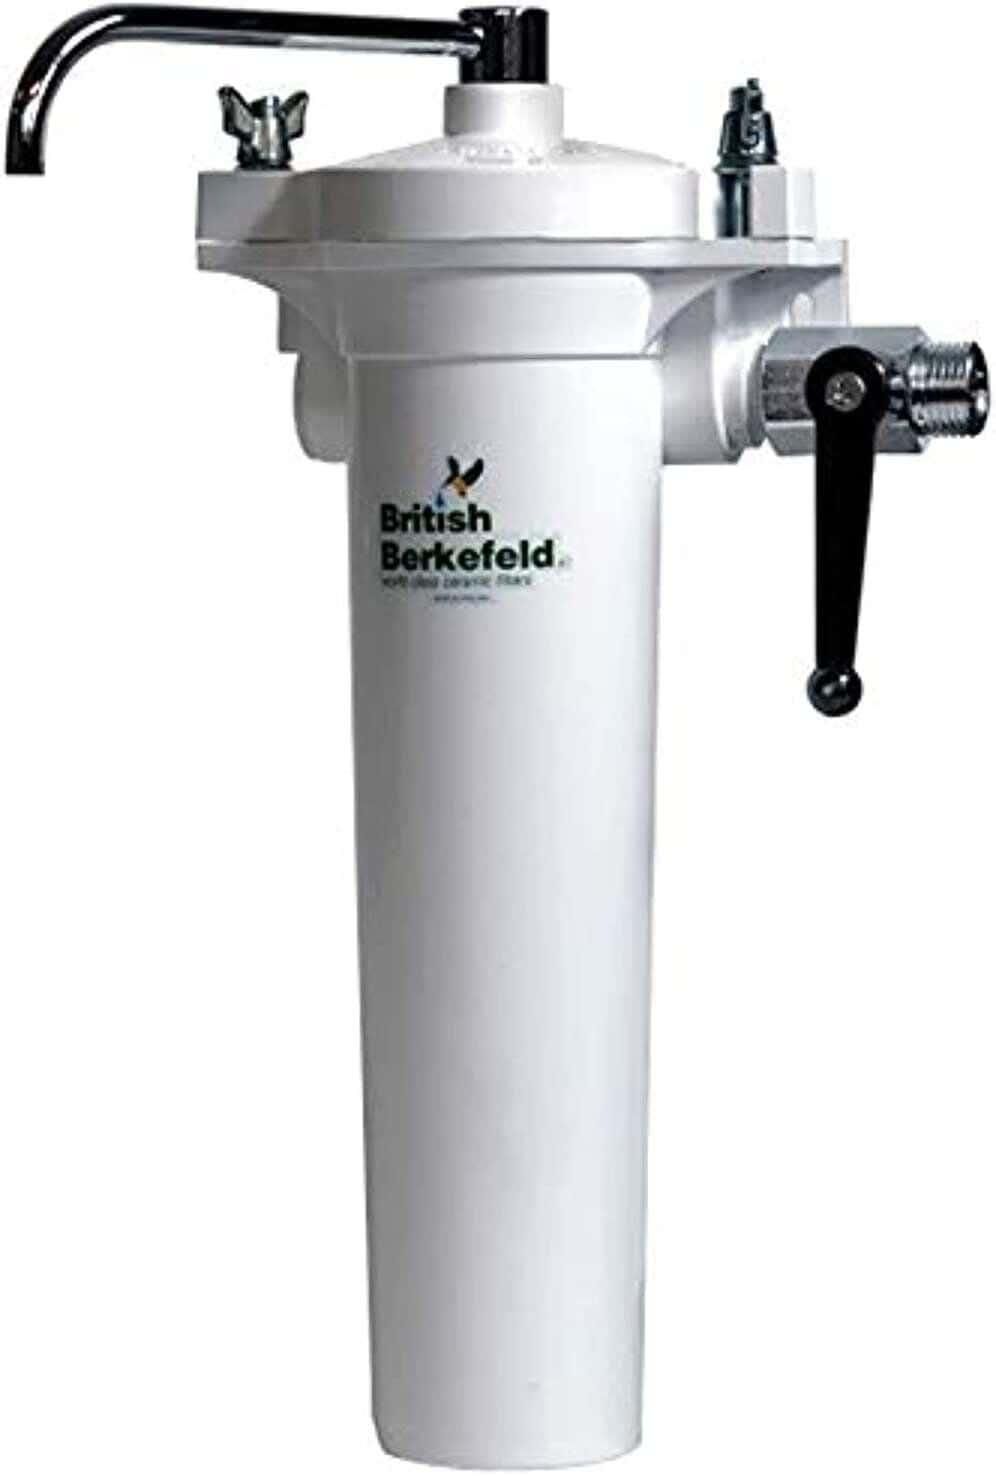 احصل على فلتر مياه بريتش بريكفيلد، مرحلة واحدة، ابيض HBA Mk II - ابيض مع أفضل العروض | رنين.كوم